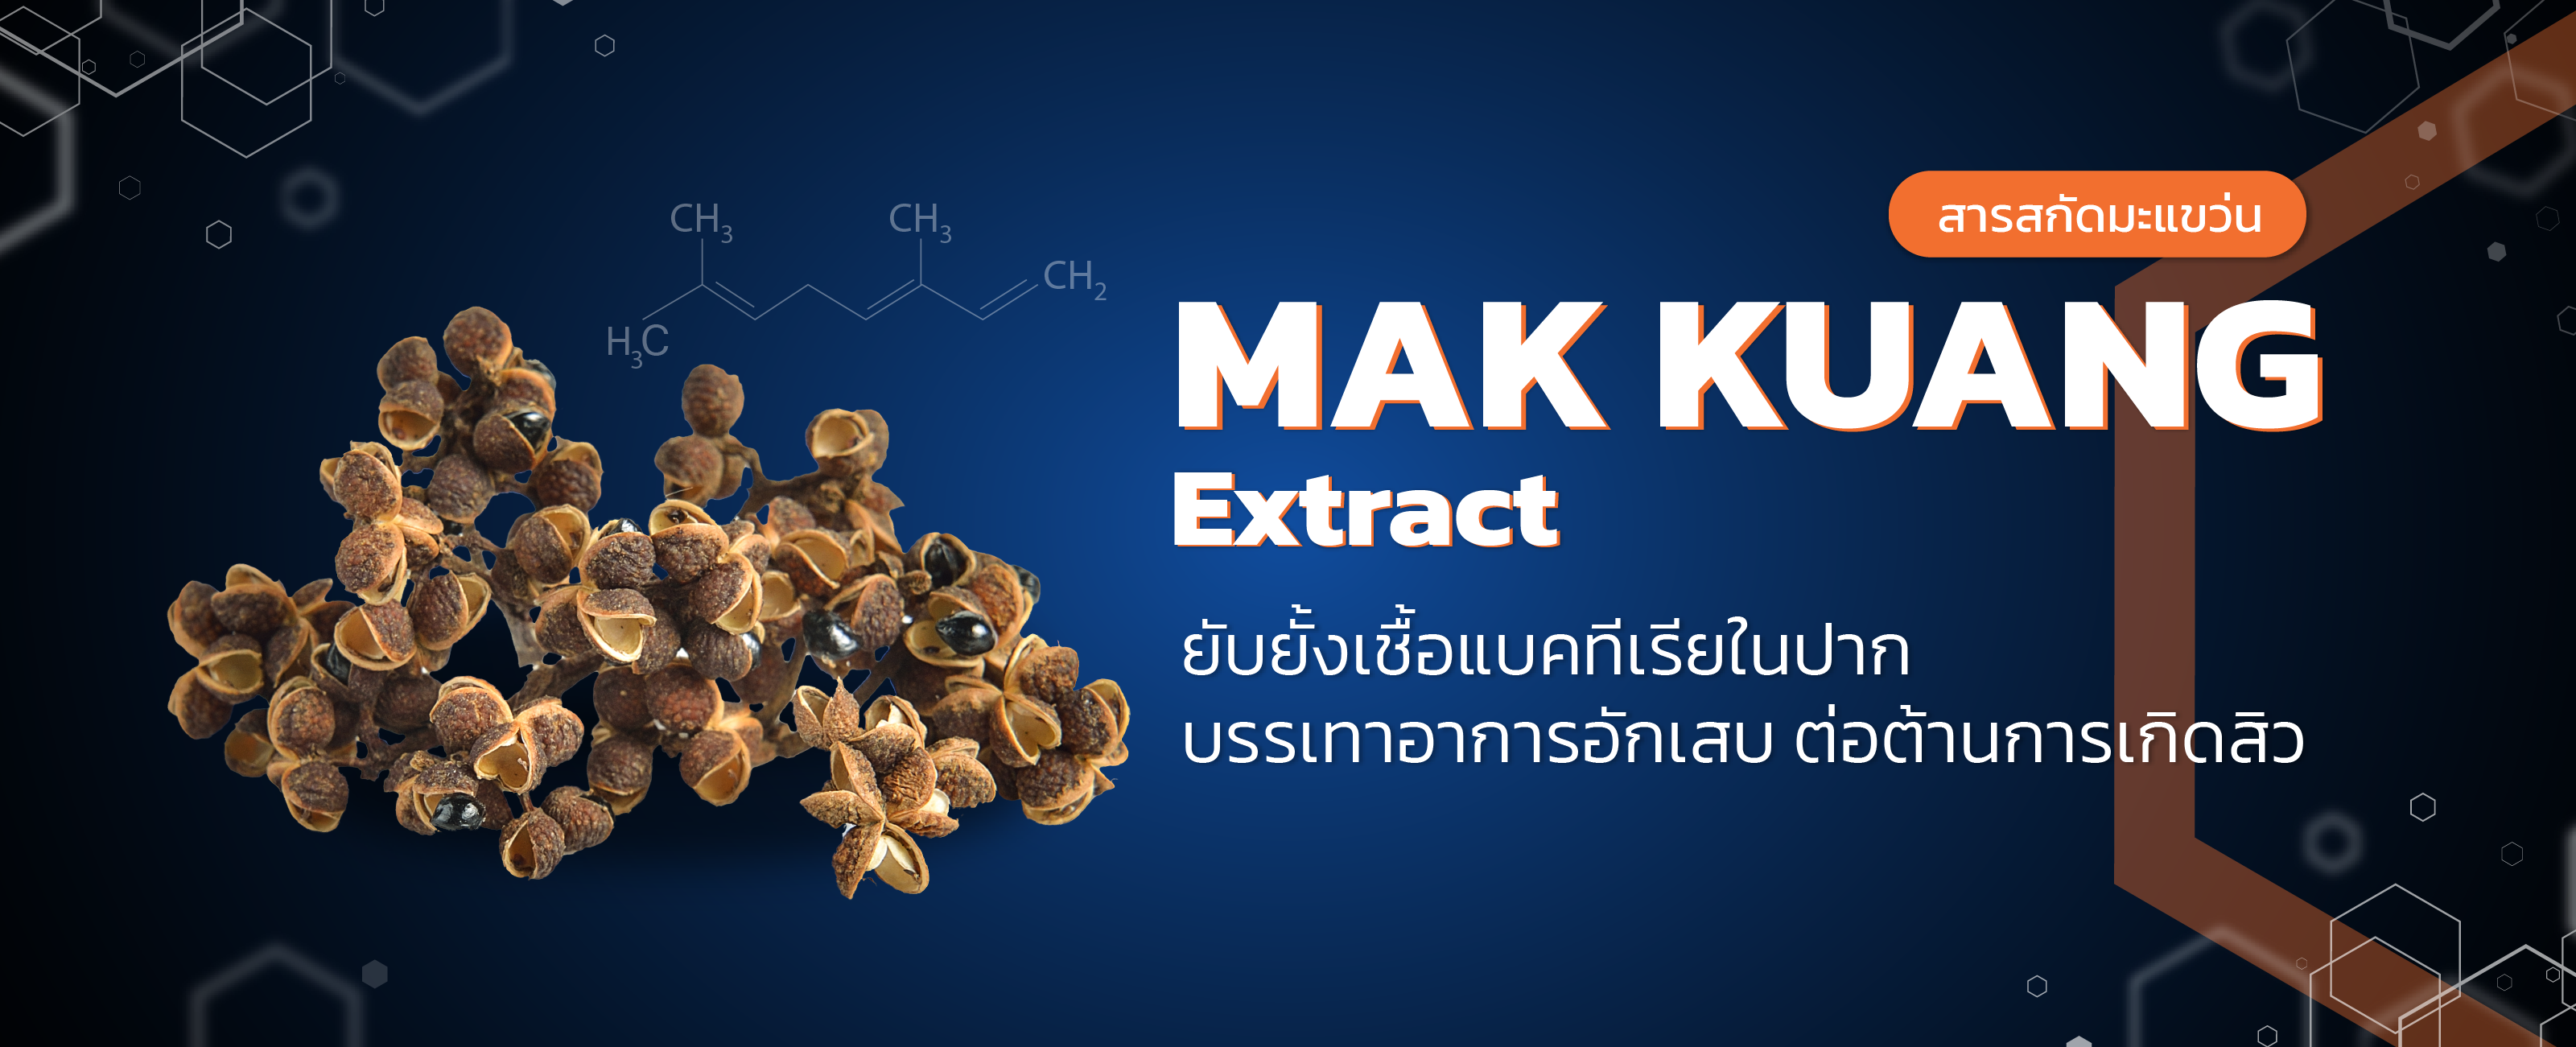 สารสกัดมะแขว่น (mak kuang extract)